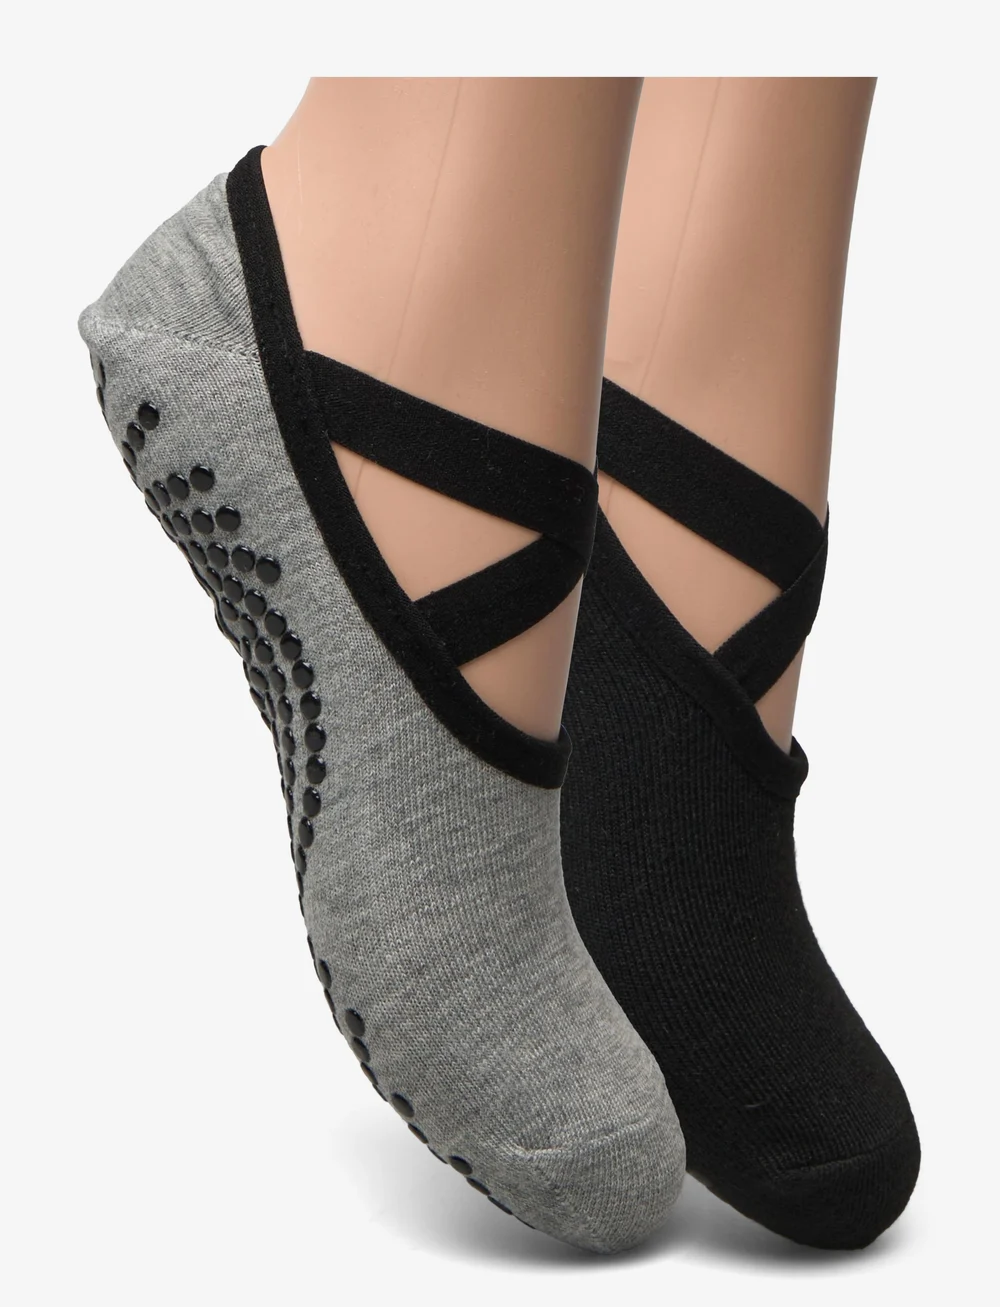 Gaiam Gaiam Grippy Yoga Socks Dovetail 2pk – sports equipment